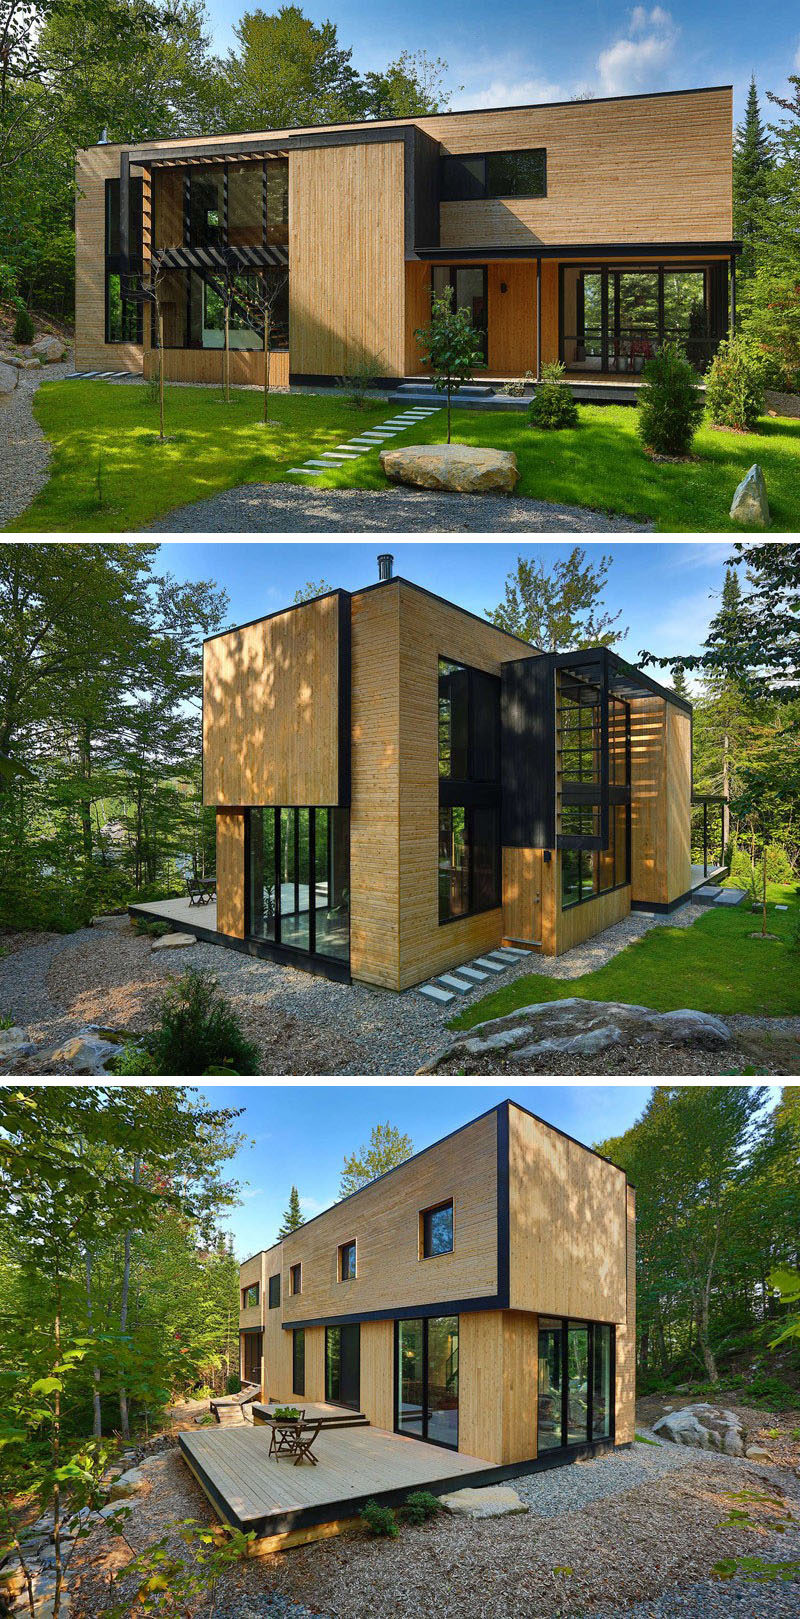 18 Современный дом в лесу // Светлое дерево покрывает фасад этого дома в окружении леса, помогая ему хорошо вписаться в остальную часть леса. #ModernHouse #ModernArchitecture #HouseInForest #HouseDesign